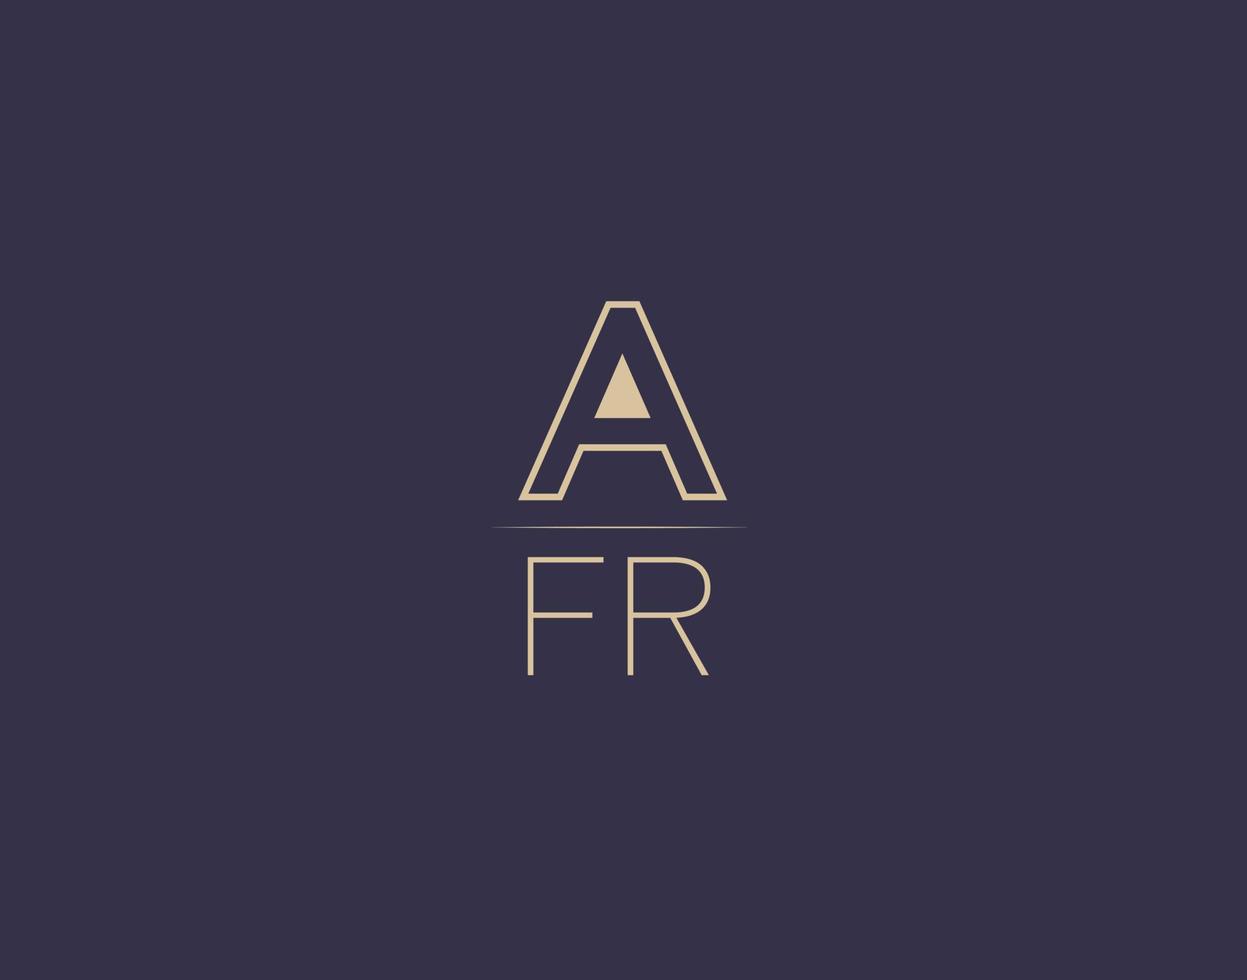 AFR letter logo design modern minimalist vector images